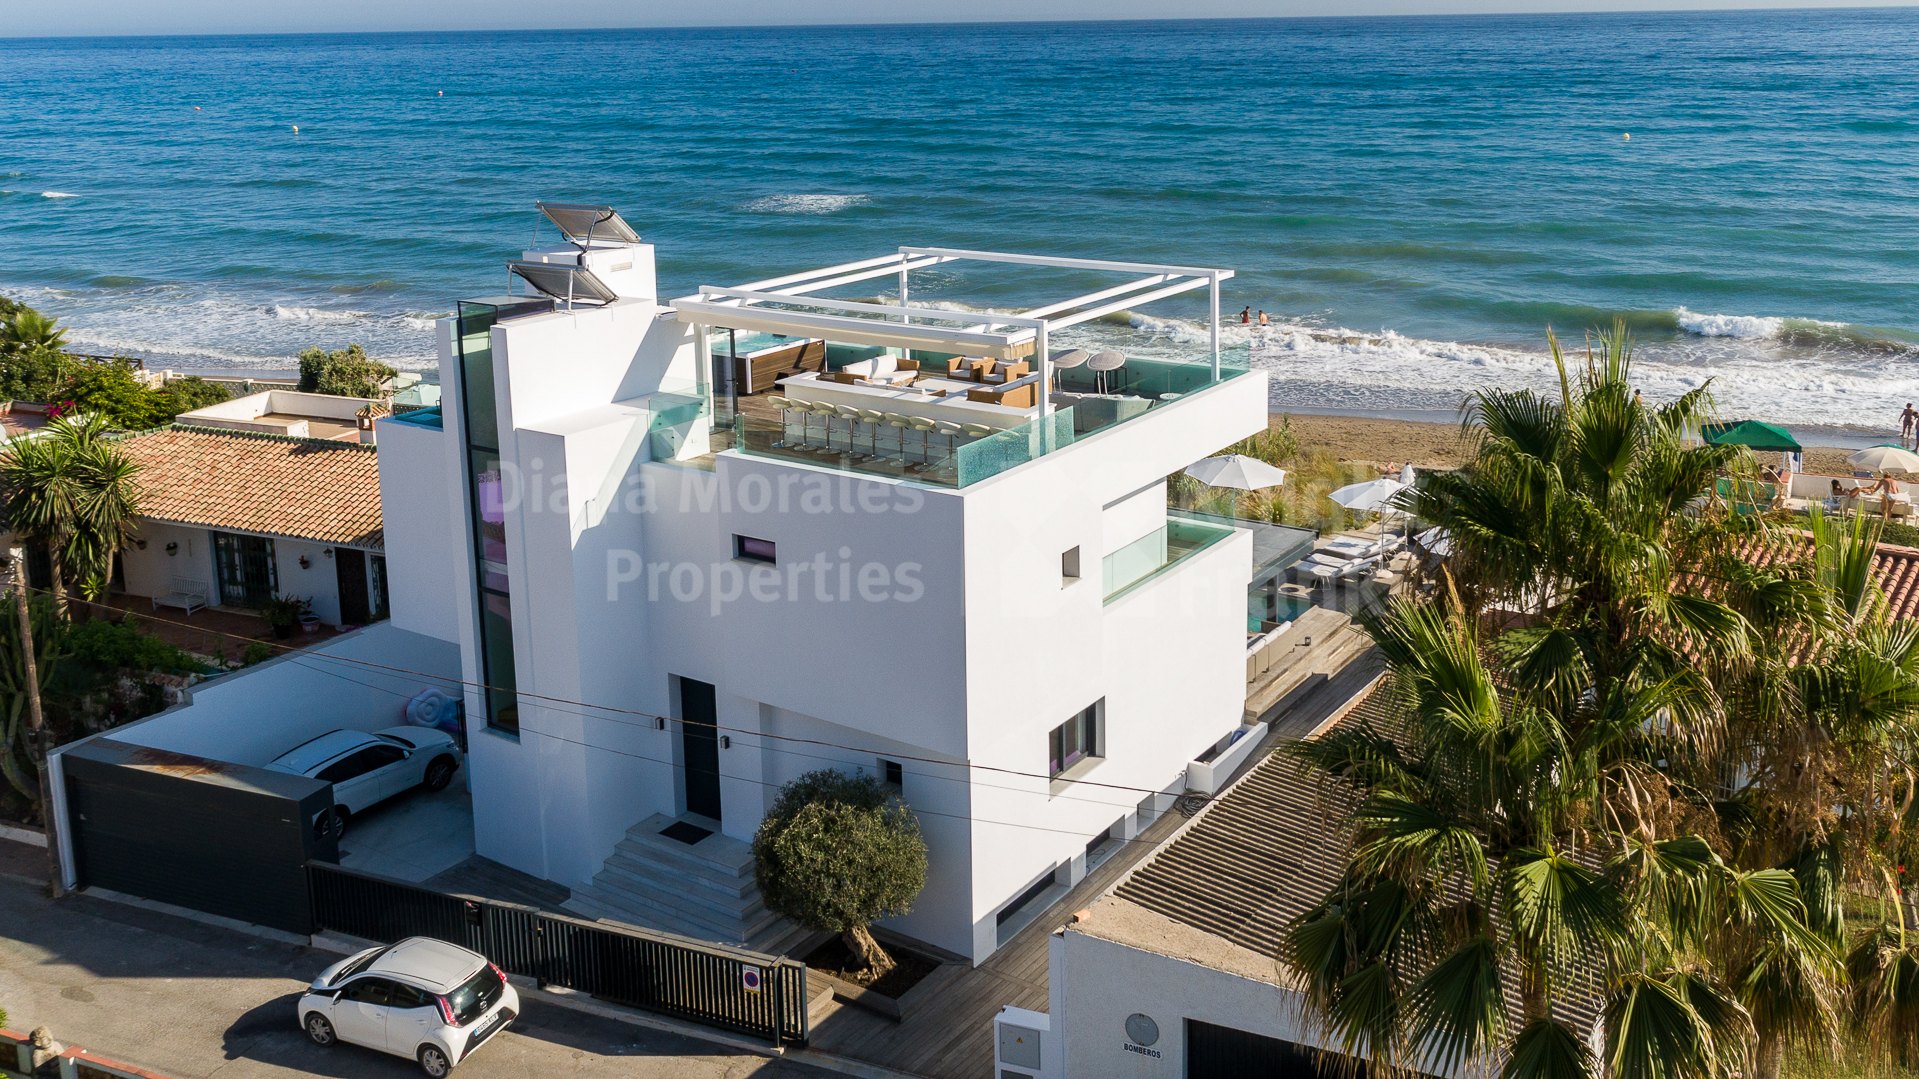 Costabella, Maison de style contemporain à proximité de la plage